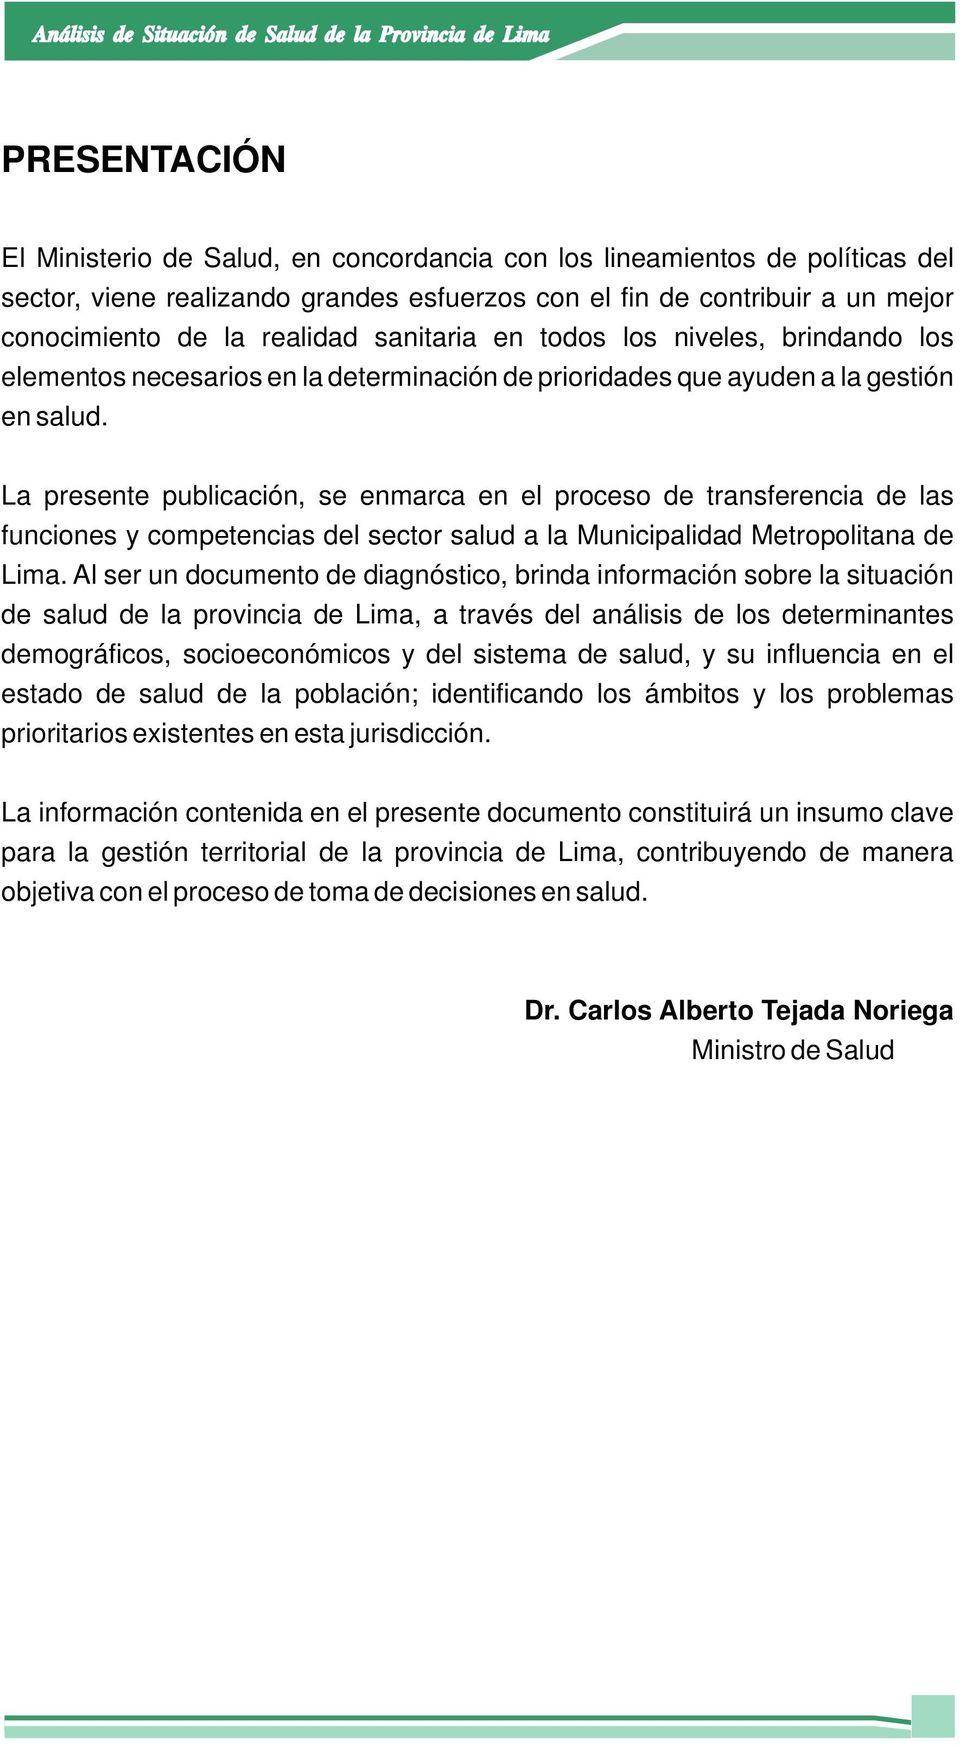 La presente publicación, se enmarca en el proceso de transferencia de las funciones y competencias del sector salud a la Municipalidad Metropolitana de Lima.